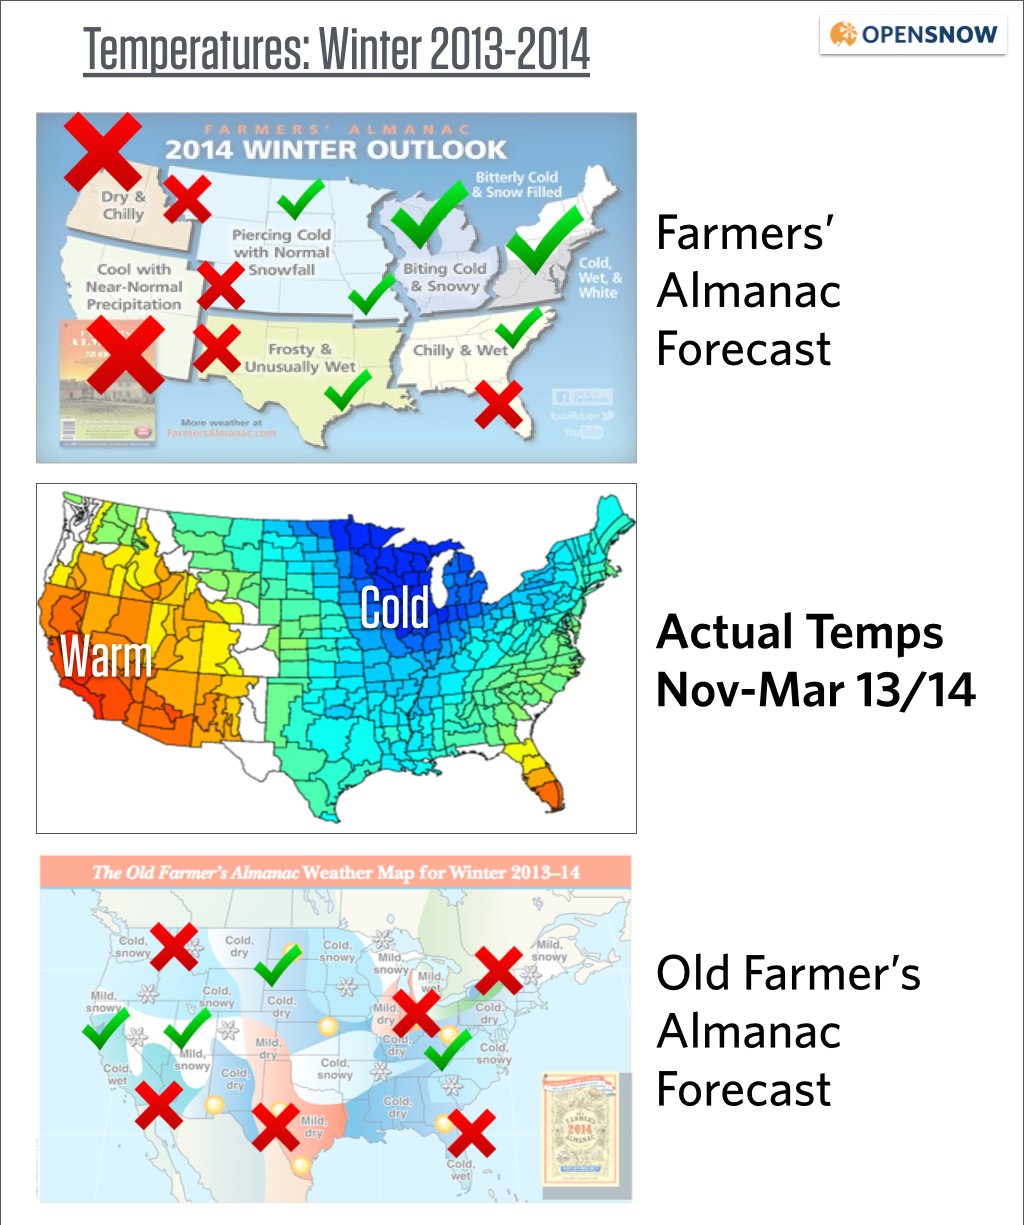 farmers almanac winter forecast accuracy